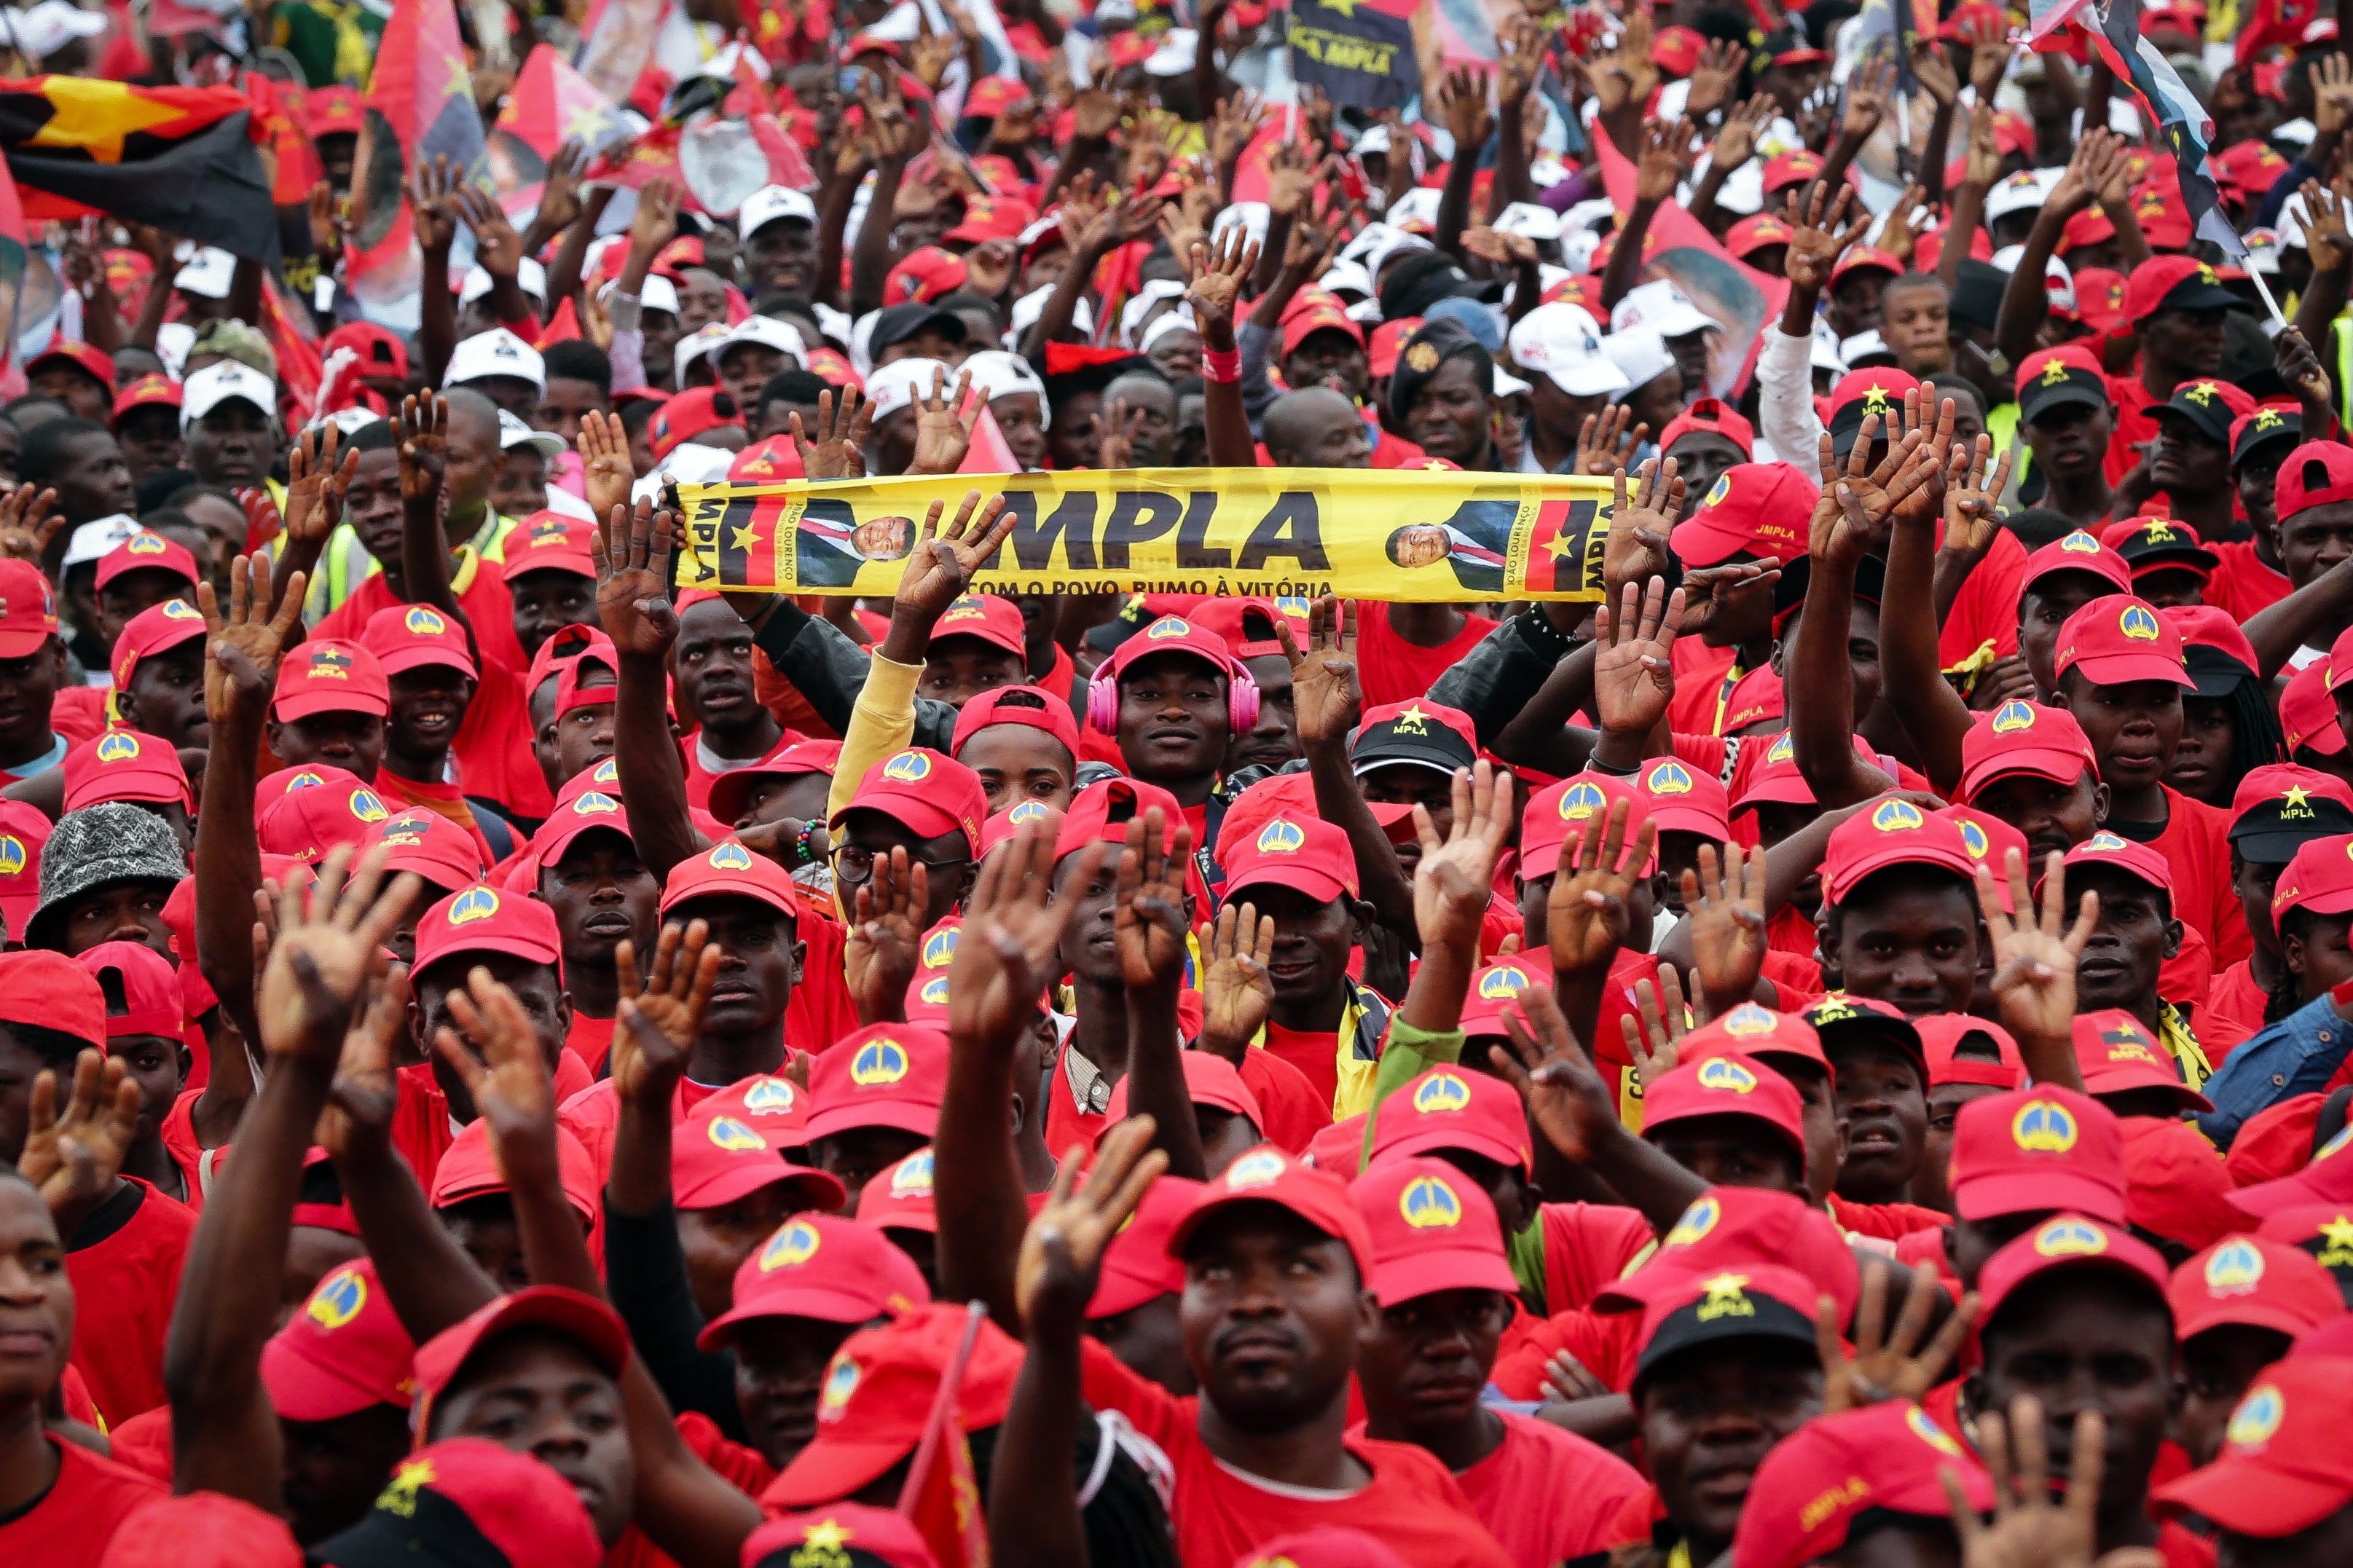 El único partido opositor en reconocer el triunfo del MPLA y felicitar al presidente Joao Lourenço fue la Alianza Patriótica Nacional.